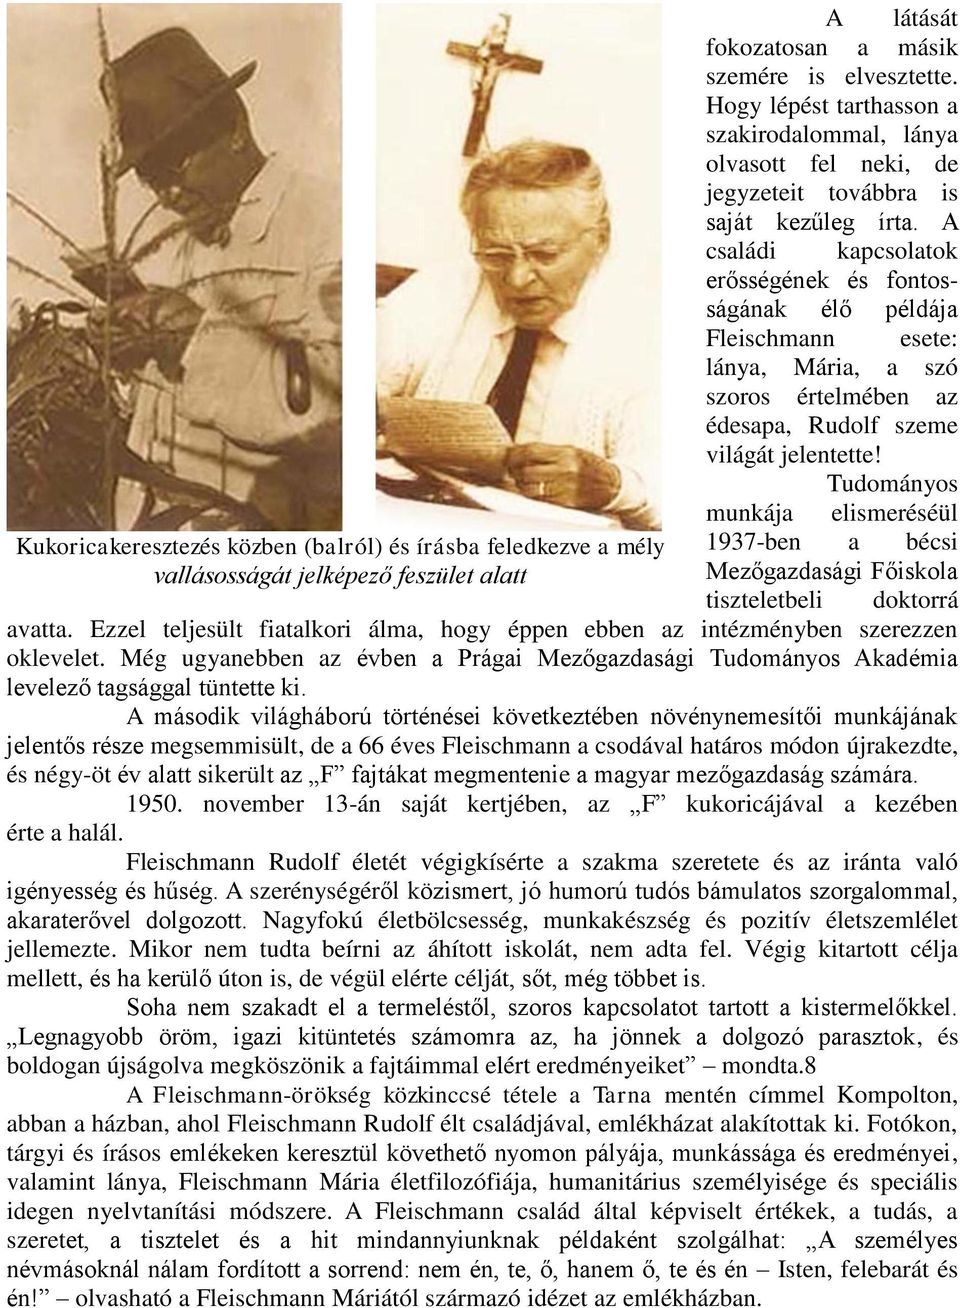 Tudományos munkája elismeréséül Kukoricakeresztezés közben (balról) és írásba feledkezve a mély 1937-ben a bécsi vallásosságát jelképező feszület alatt Mezőgazdasági Főiskola tiszteletbeli doktorrá